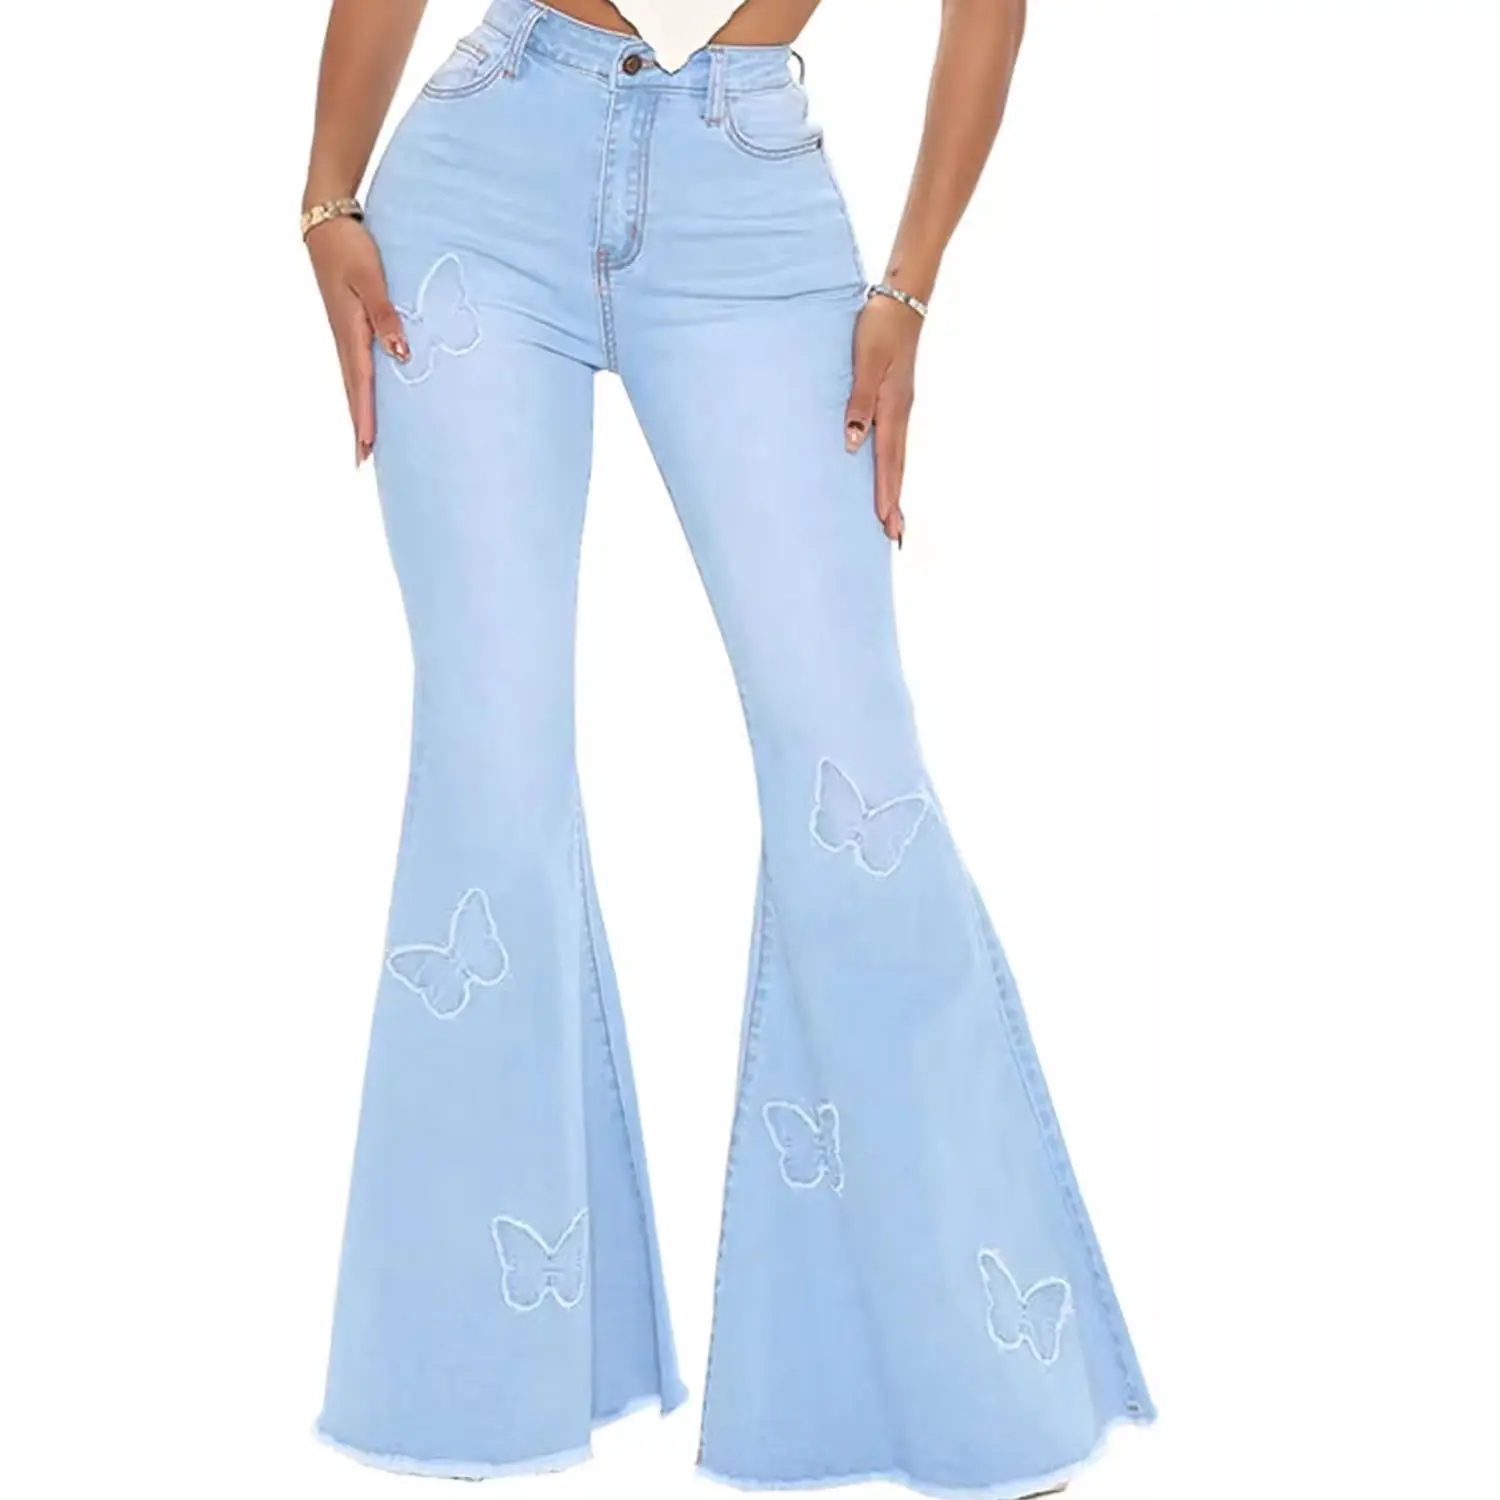 Оптовая продажа, Классические расклешенные джинсы с вышитыми бабочками для женщин, светло-синие джинсы с высокой талией, Модные расклешенные джинсы